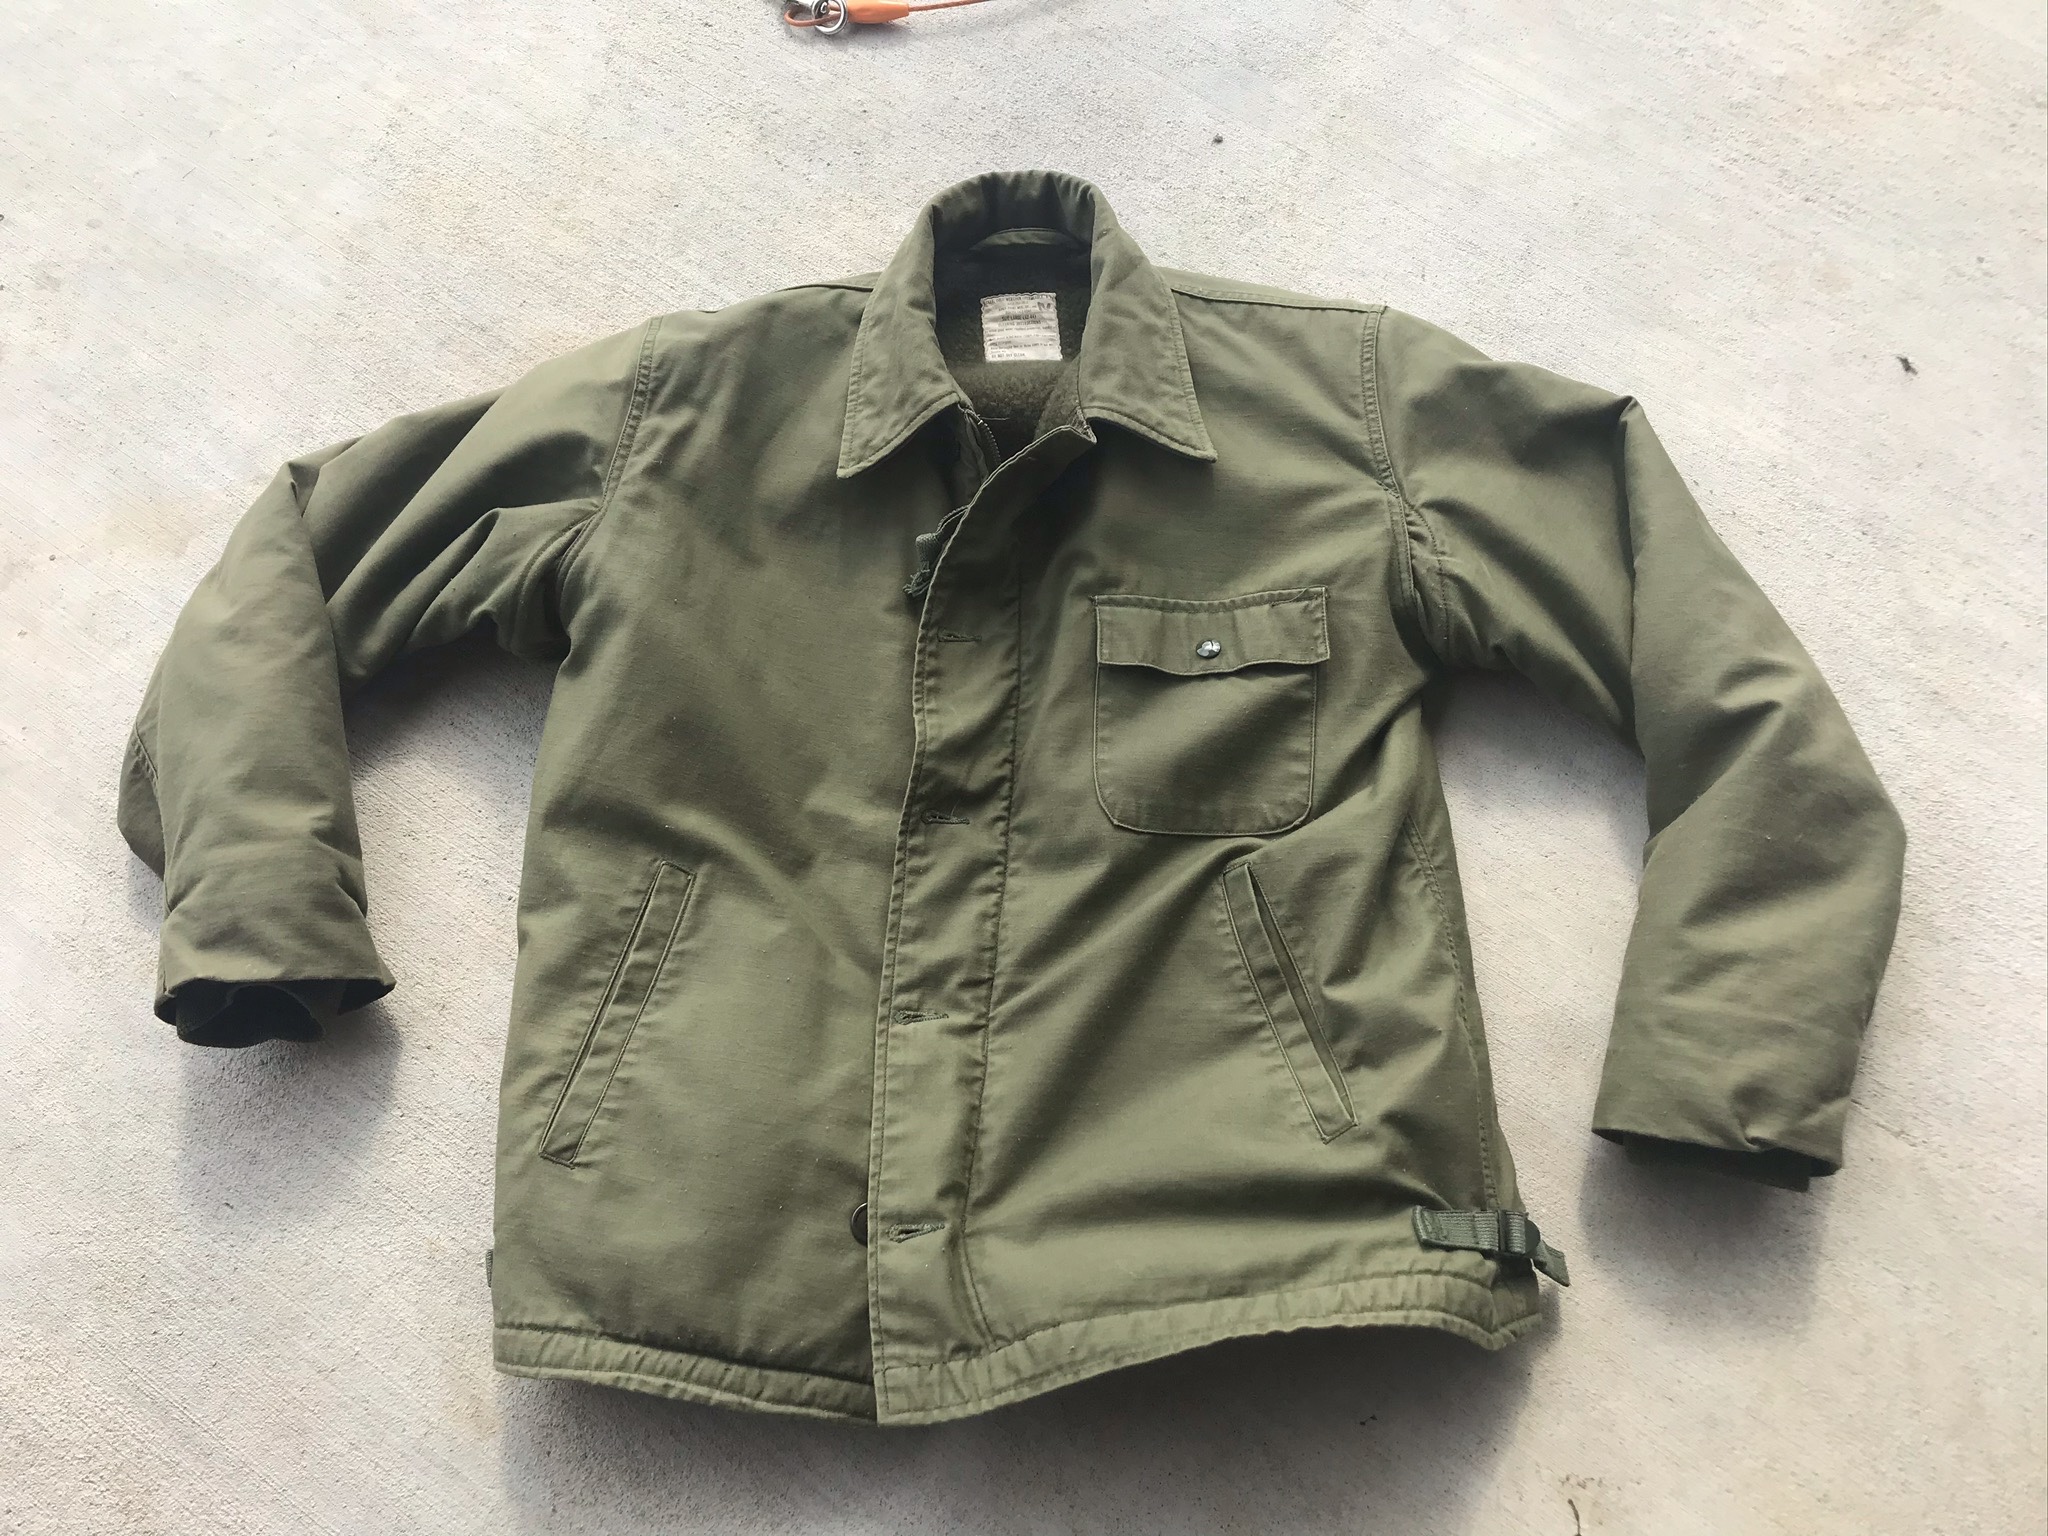 For Sale Original USN A-2 Deck jacket (1974) Size Large 42-44 | The ...